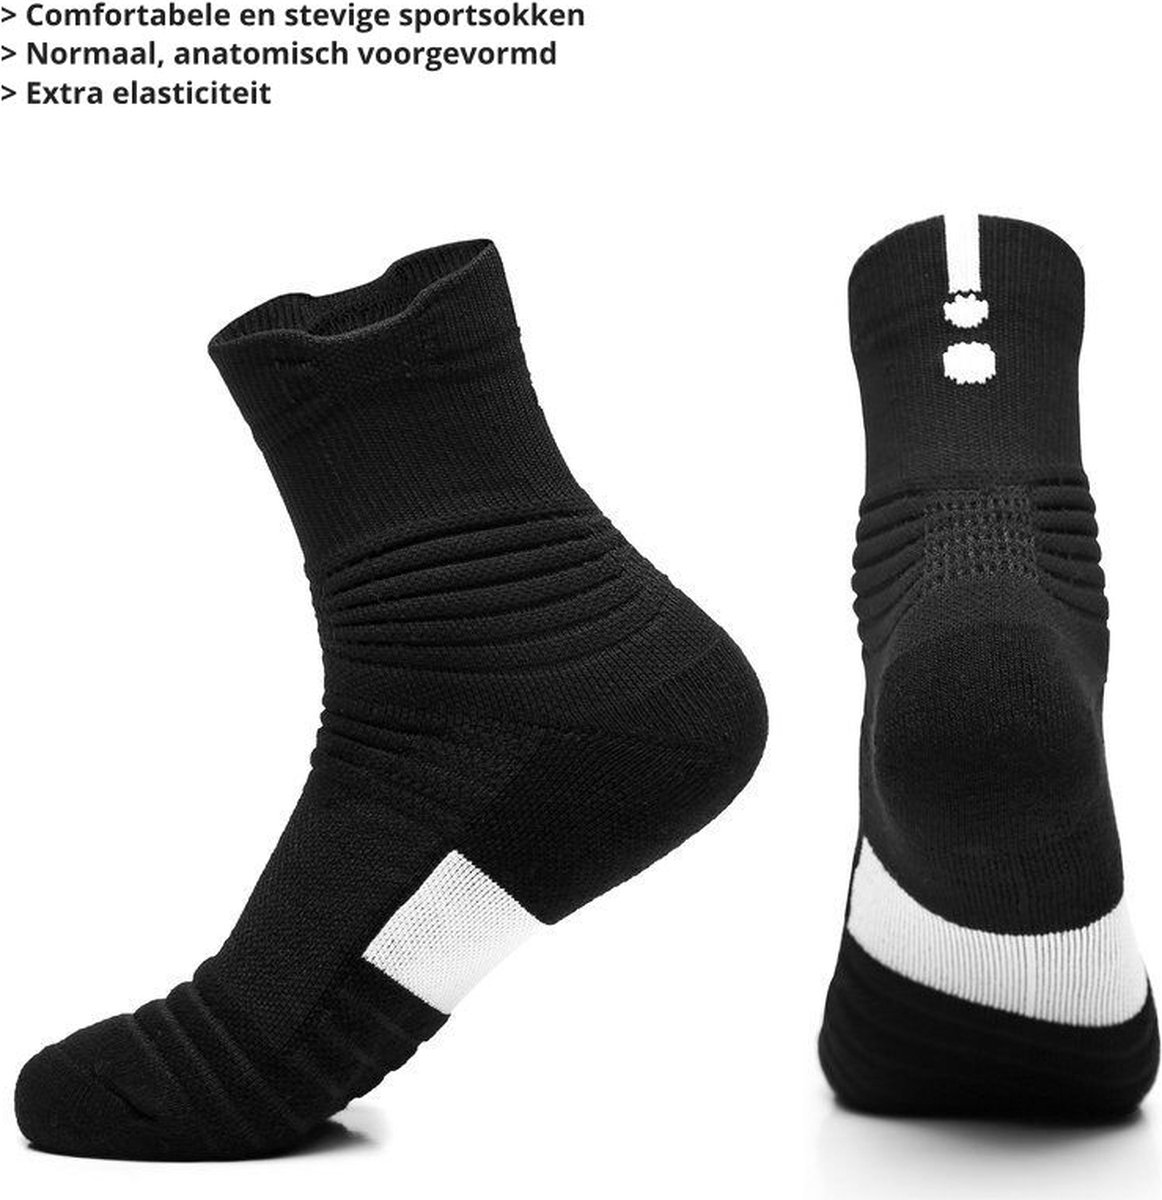 UPSOCKS® Sportsokken/Hardloopsokken- stevige en comfortabele sokken - Ideaal voor verschillende sporten zoals hardlopen - tennis - basketbal - fitness - wielrennen